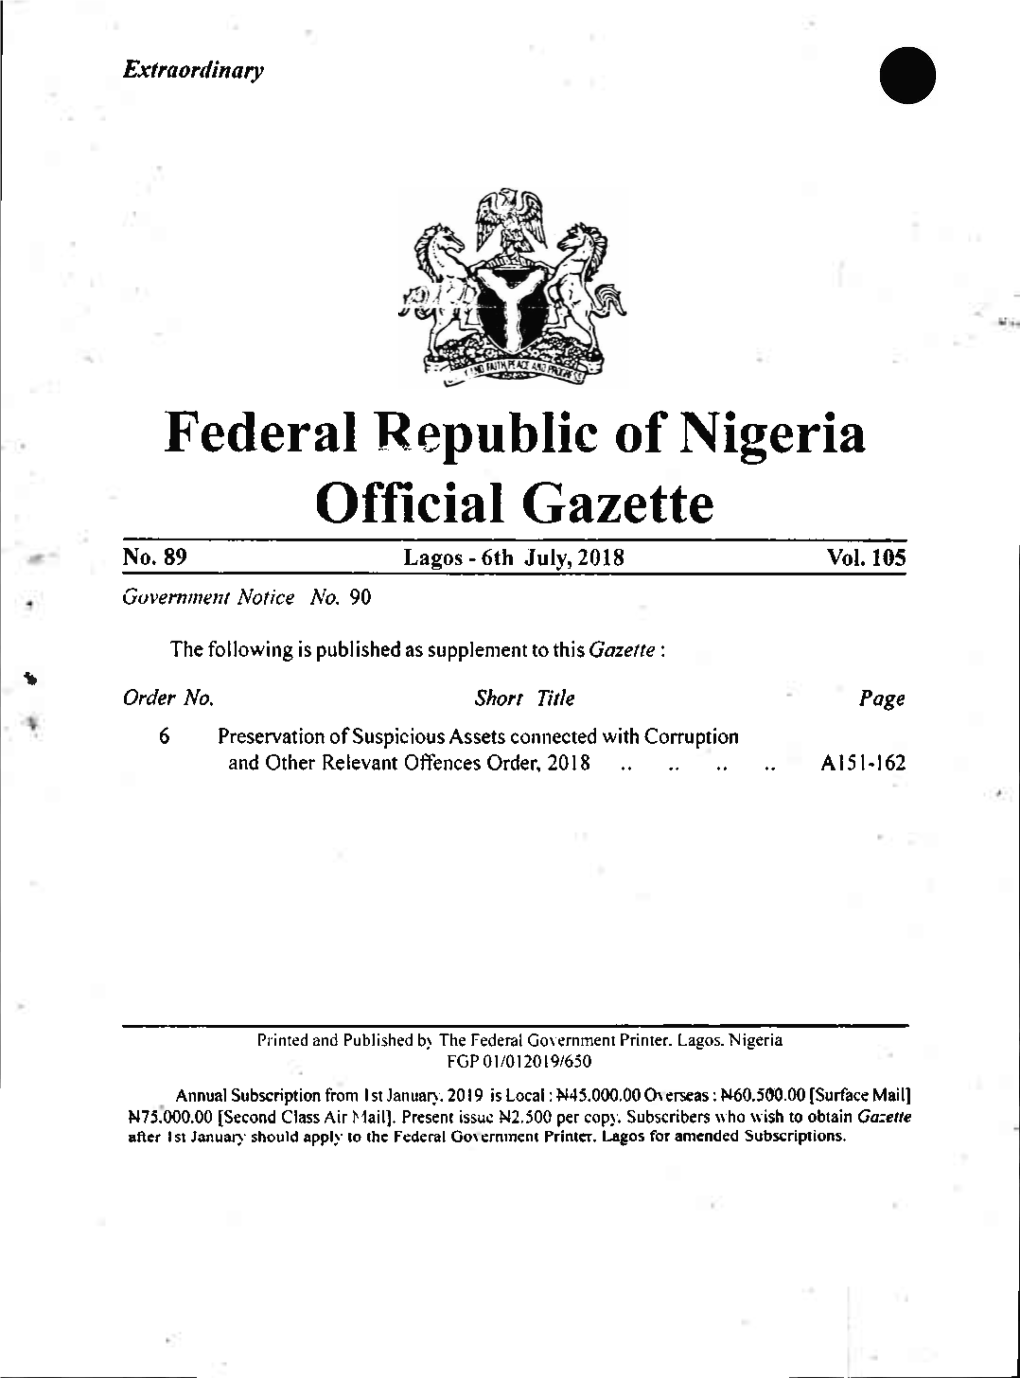 Federal Republic of Nigeria Official Gazette No